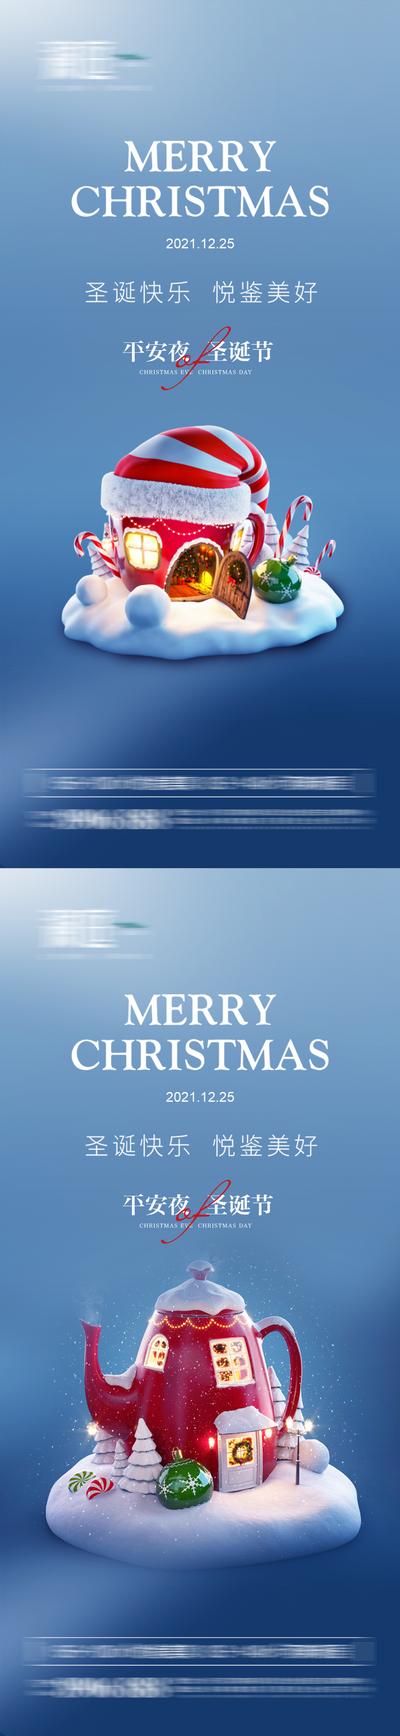 南门网 海报  地产 西方节日 圣诞节  平安夜 雪景